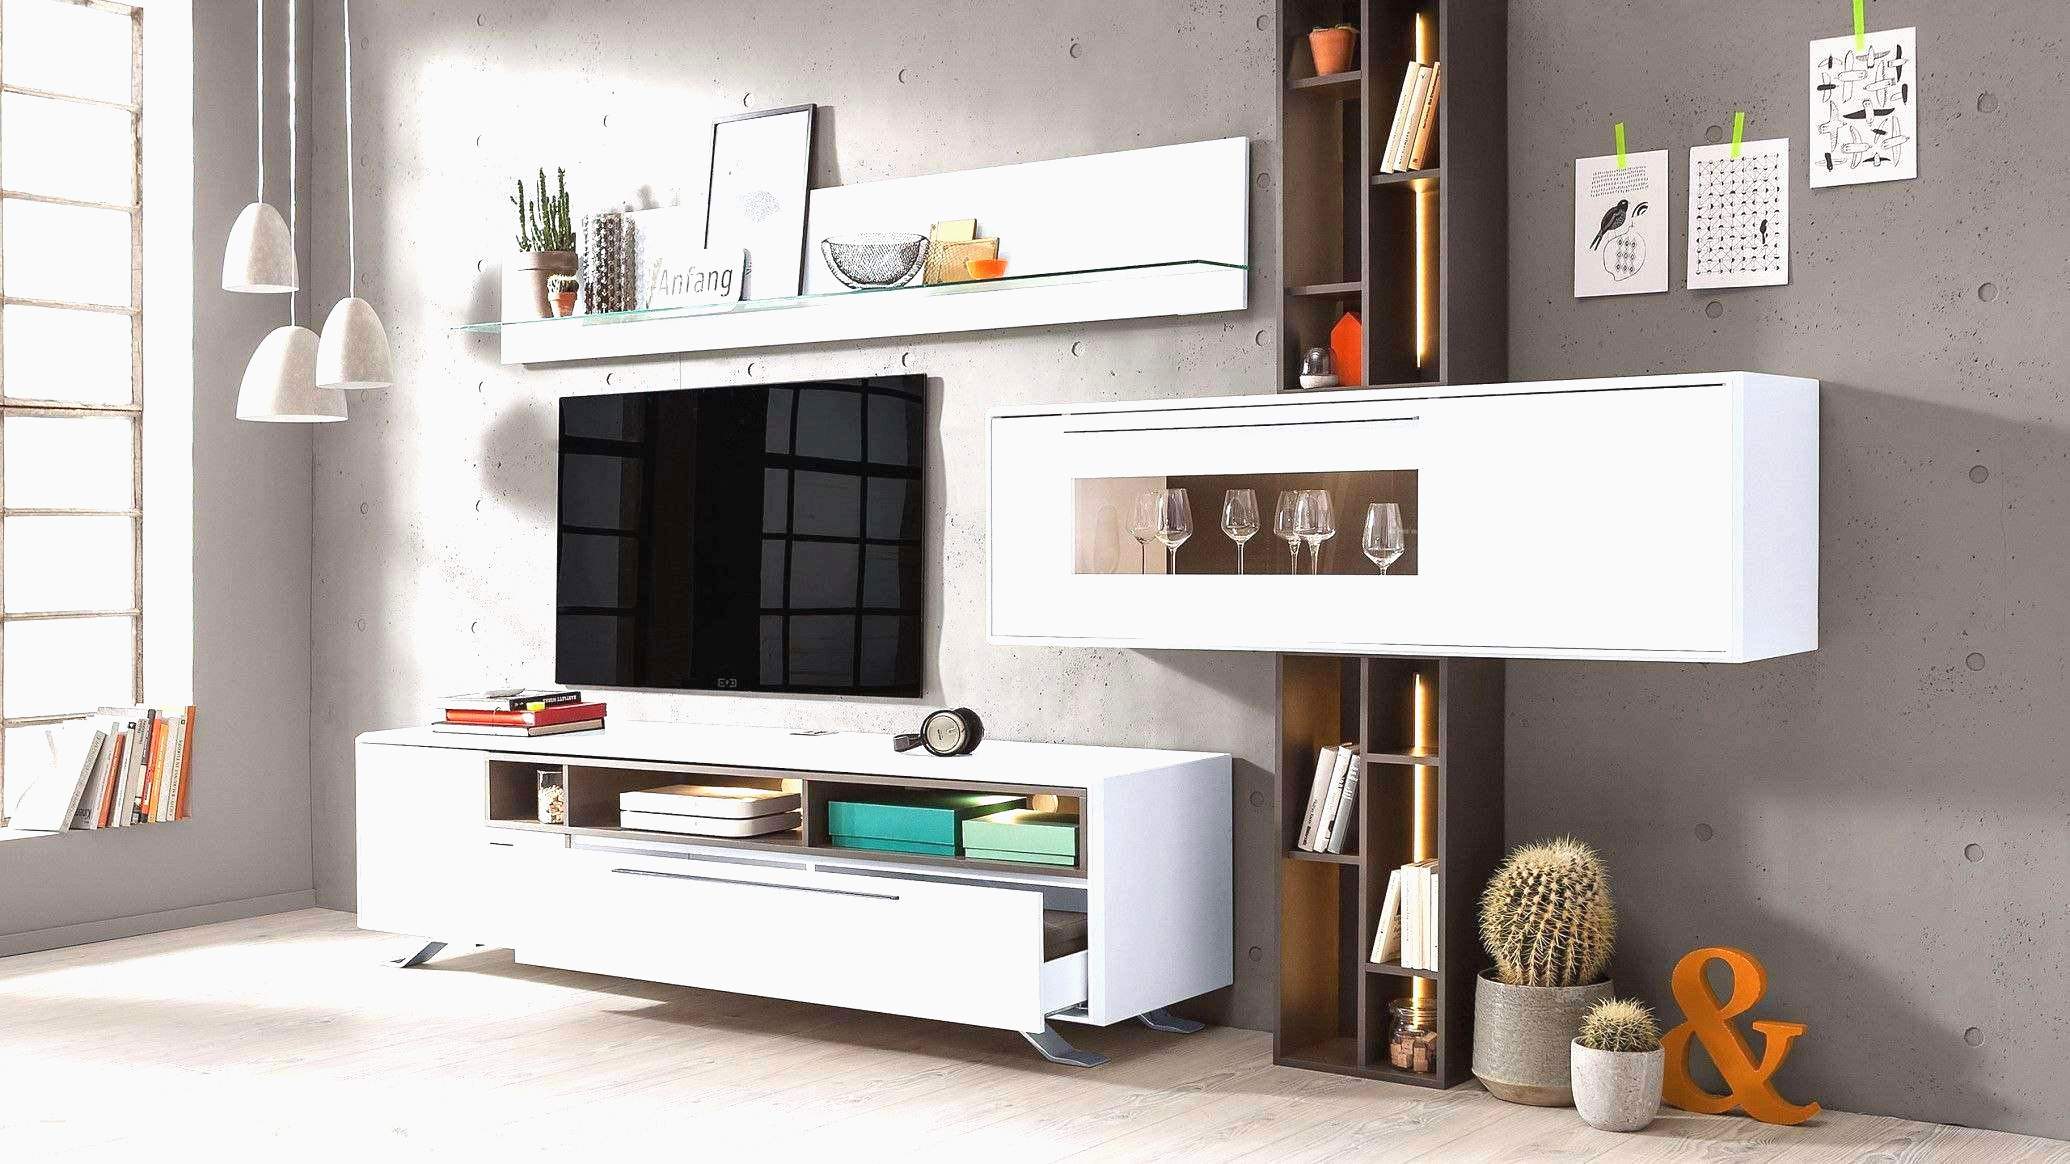 Deko Ideen Aus Holz Inspirierend 27 Luxus Wanddeko Wohnzimmer Holz Schön